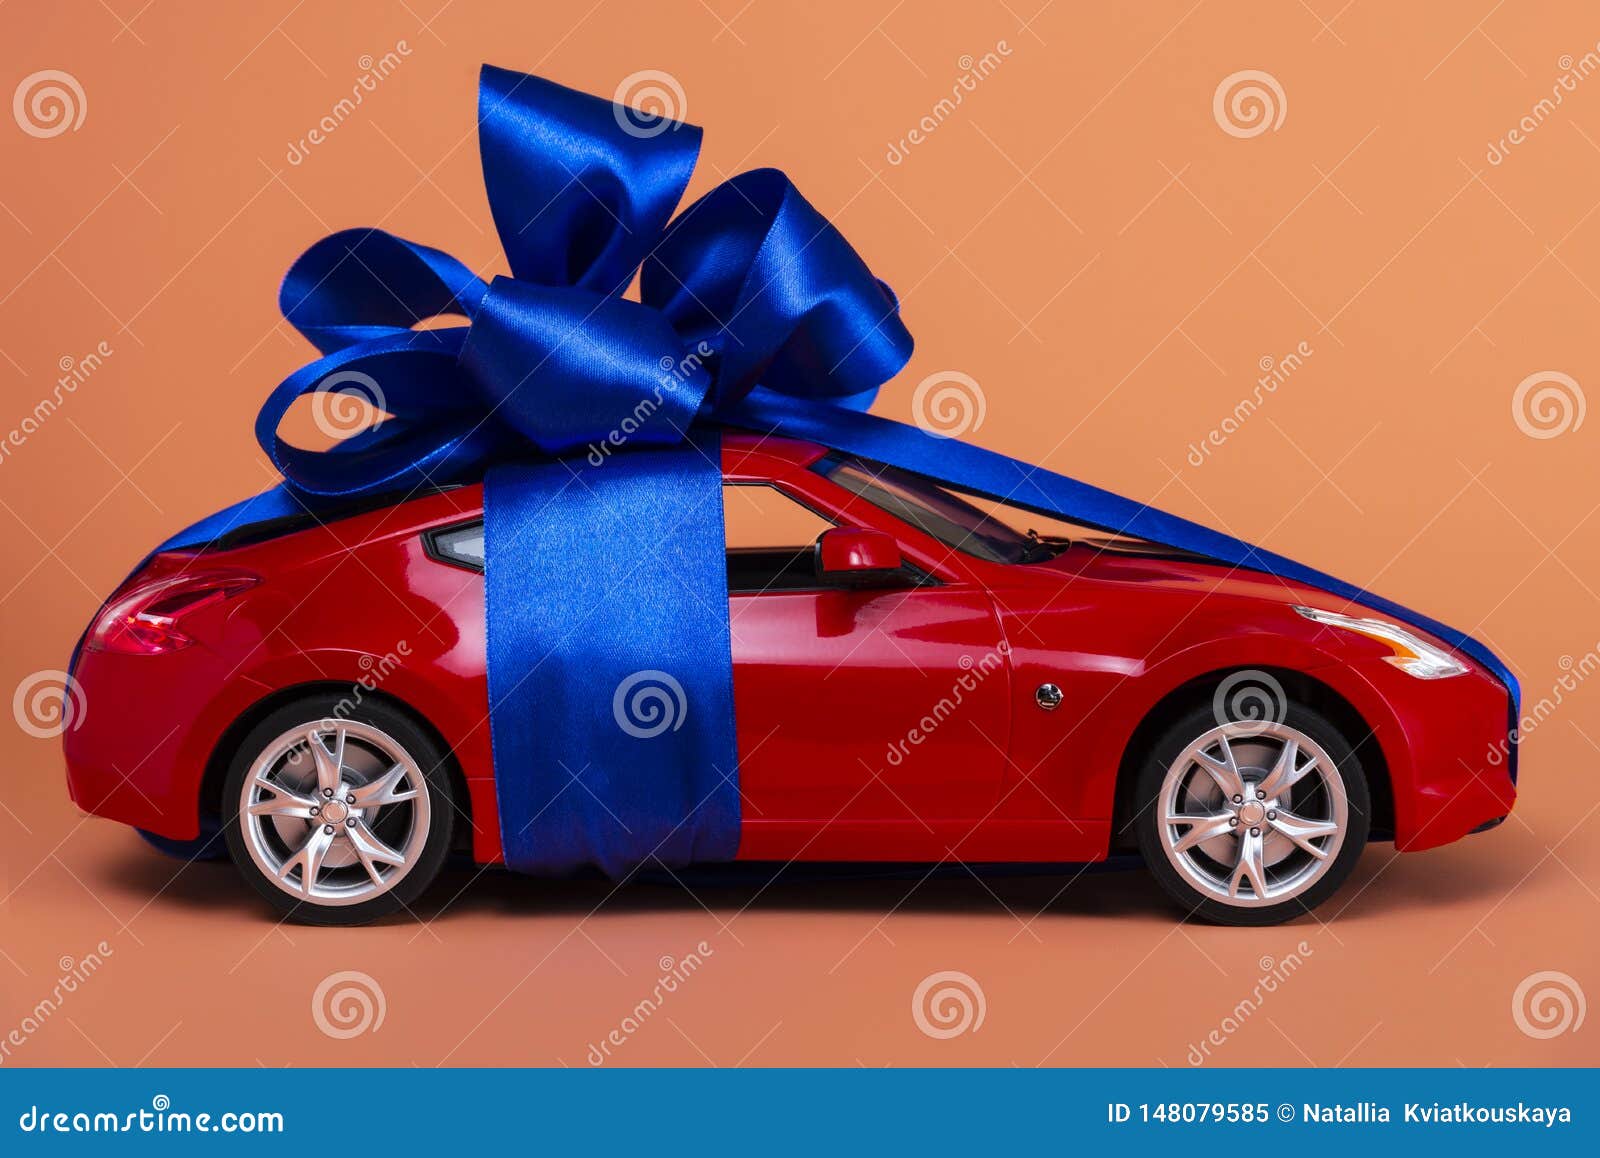 Neues Rotes Auto Mit Einem Blauen Bogen Als Geschenk Auf Einem  Korallenroten Hintergrund Stockbild - Bild von anlieferung, konzept:  148079585